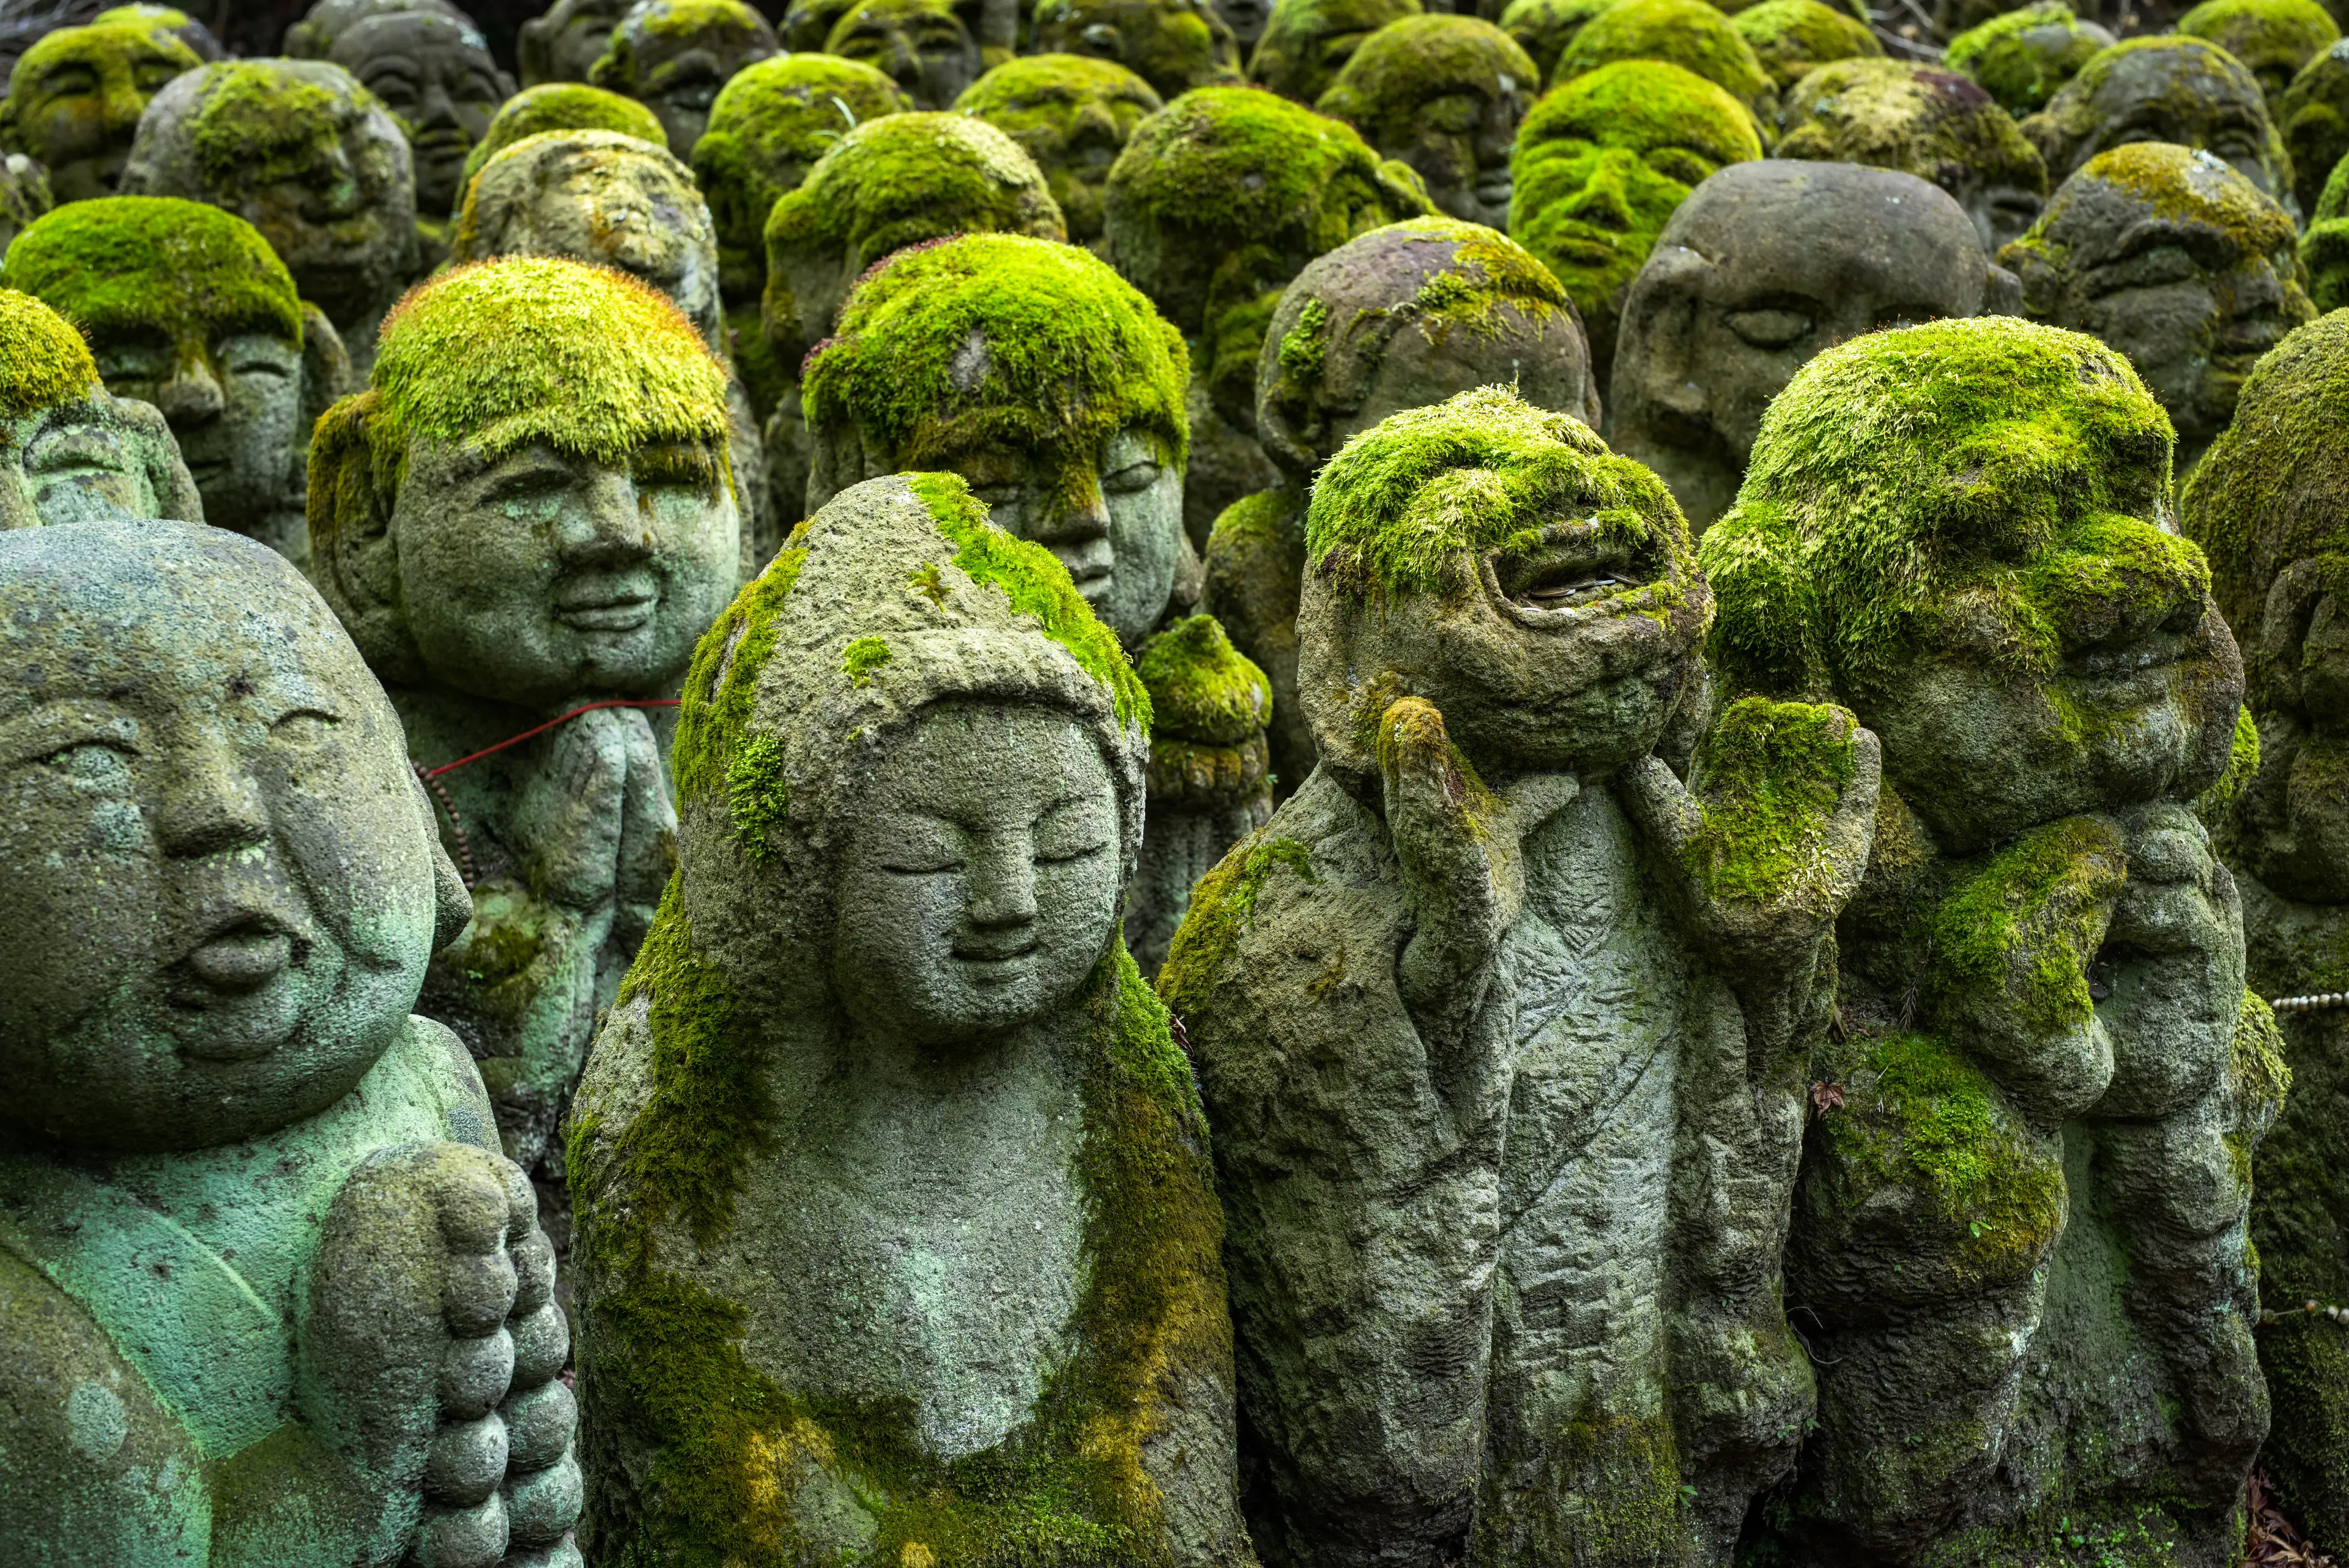 Buddhist stone statues at the Otagi Nenbutsu ji temple